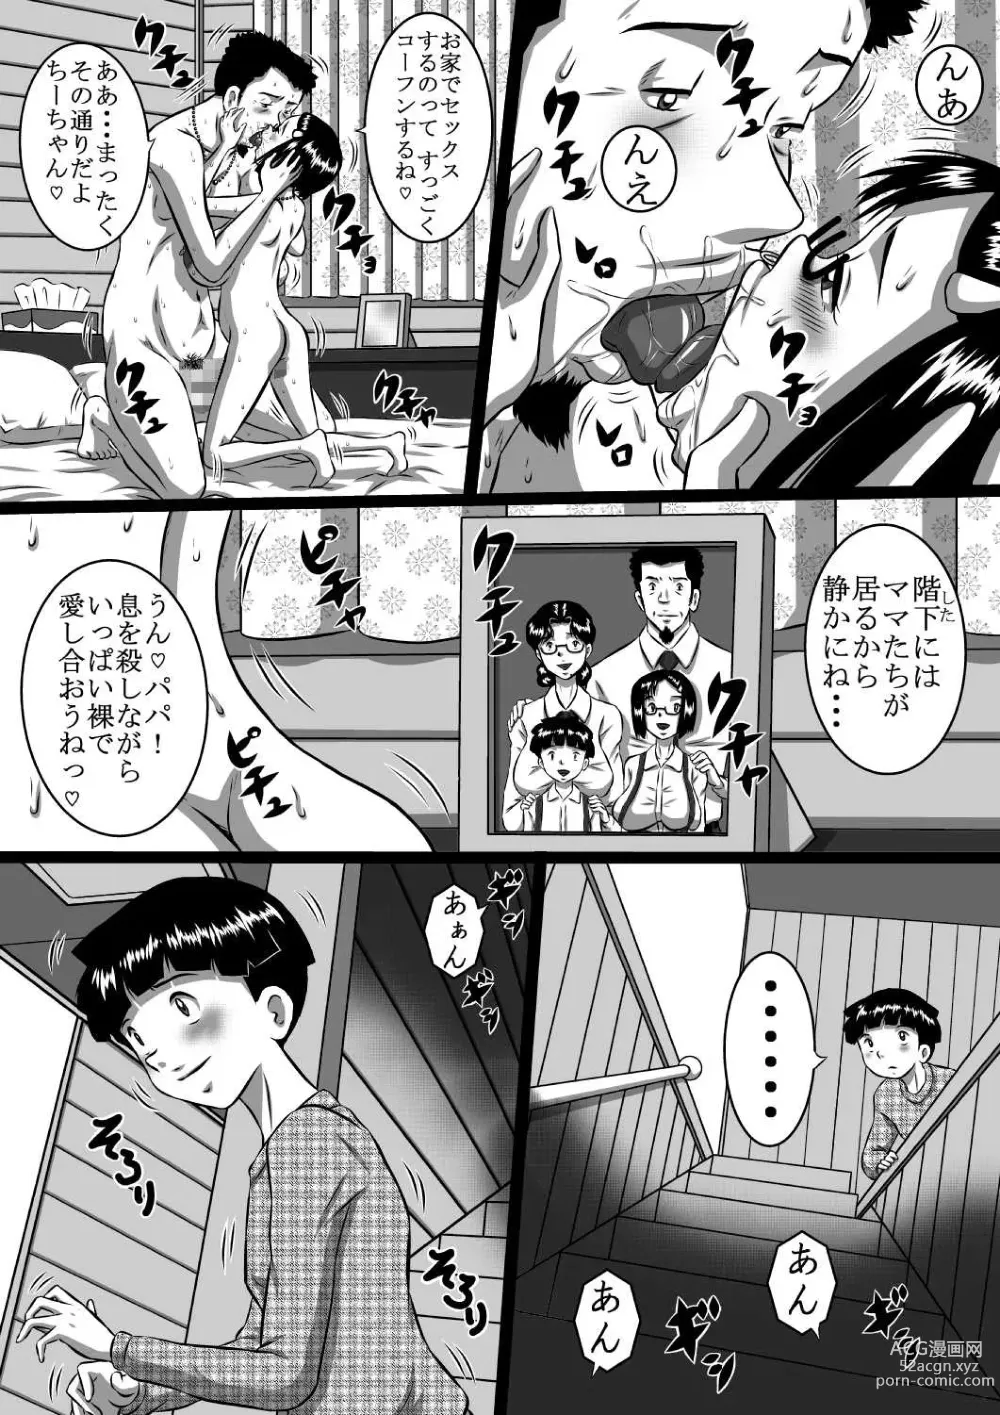 Page 4 of doujinshi Haha x Musuko + Chichi x Musume! Konya  mo Kinshinsoukan (Sex) Shinai to! Saa, Kazoku Minna de!